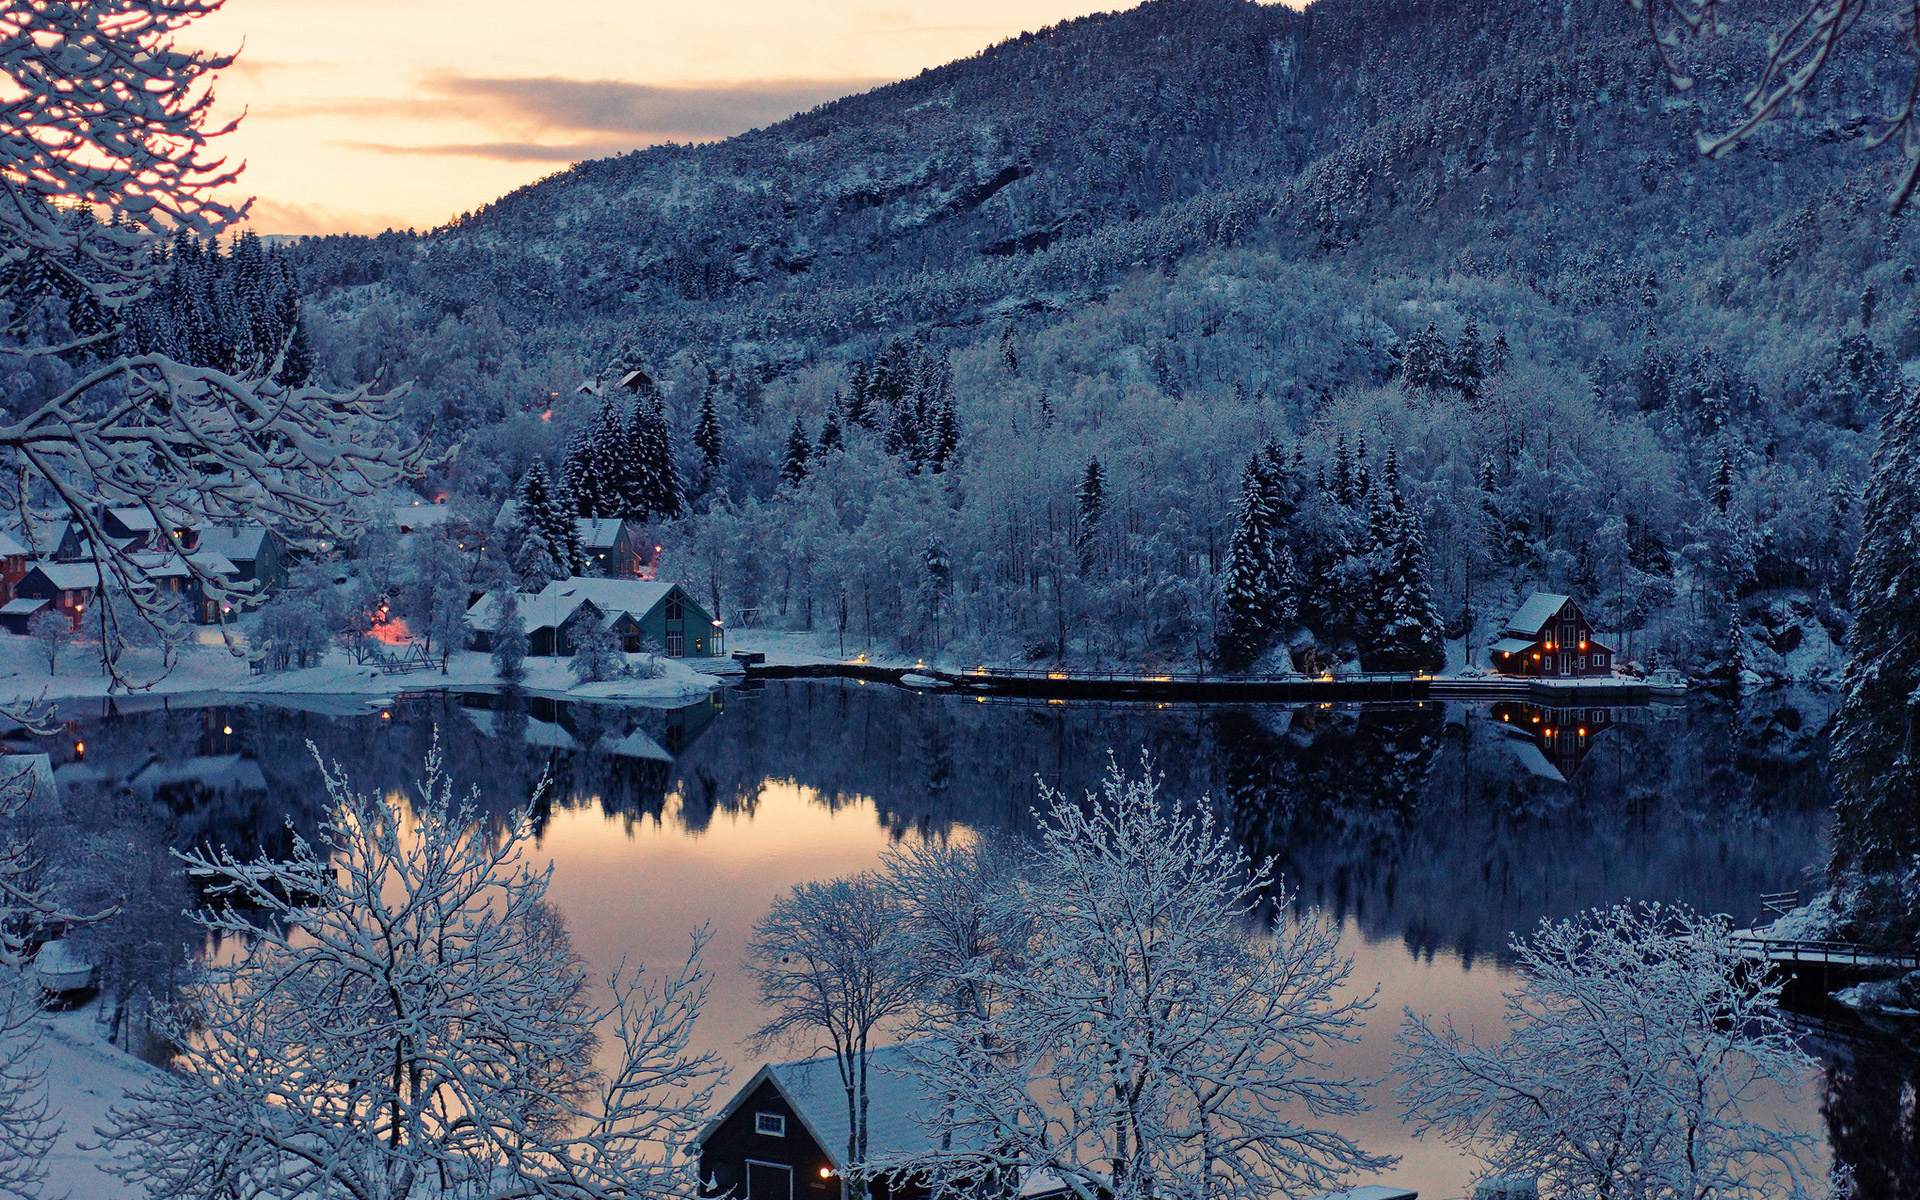 Snowy village, Winter wonderland, Chilled beauty, Cozy retreat, 1920x1200 HD Desktop